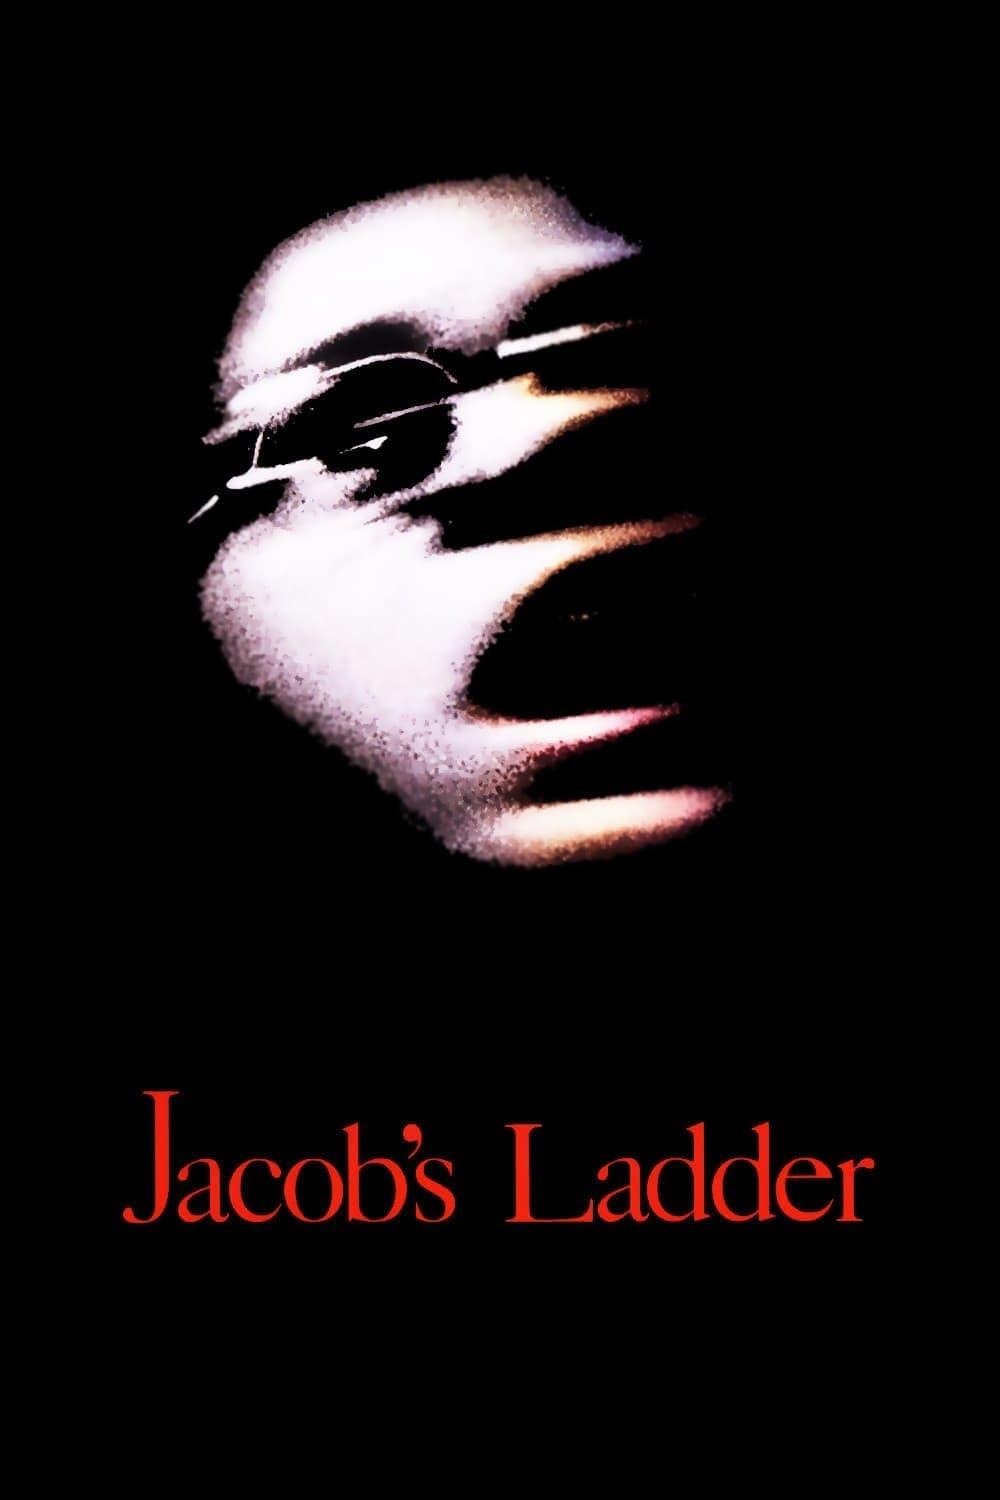 Jacob's Ladder - In der Gewalt des Jenseits poster